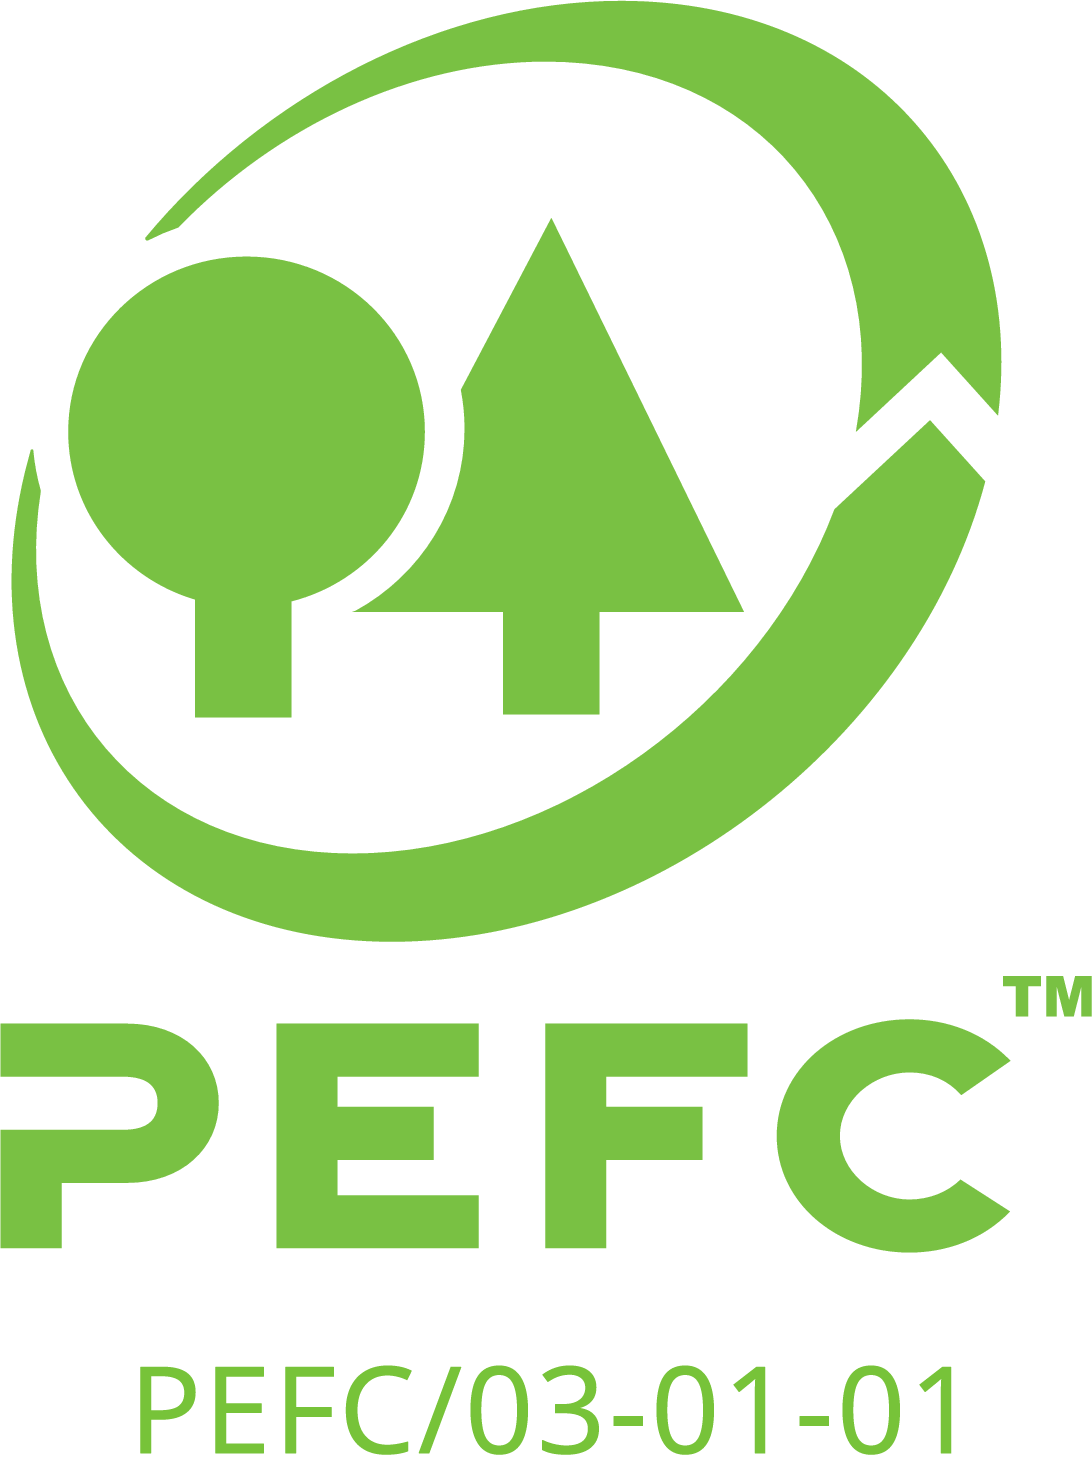 PEFC Norway